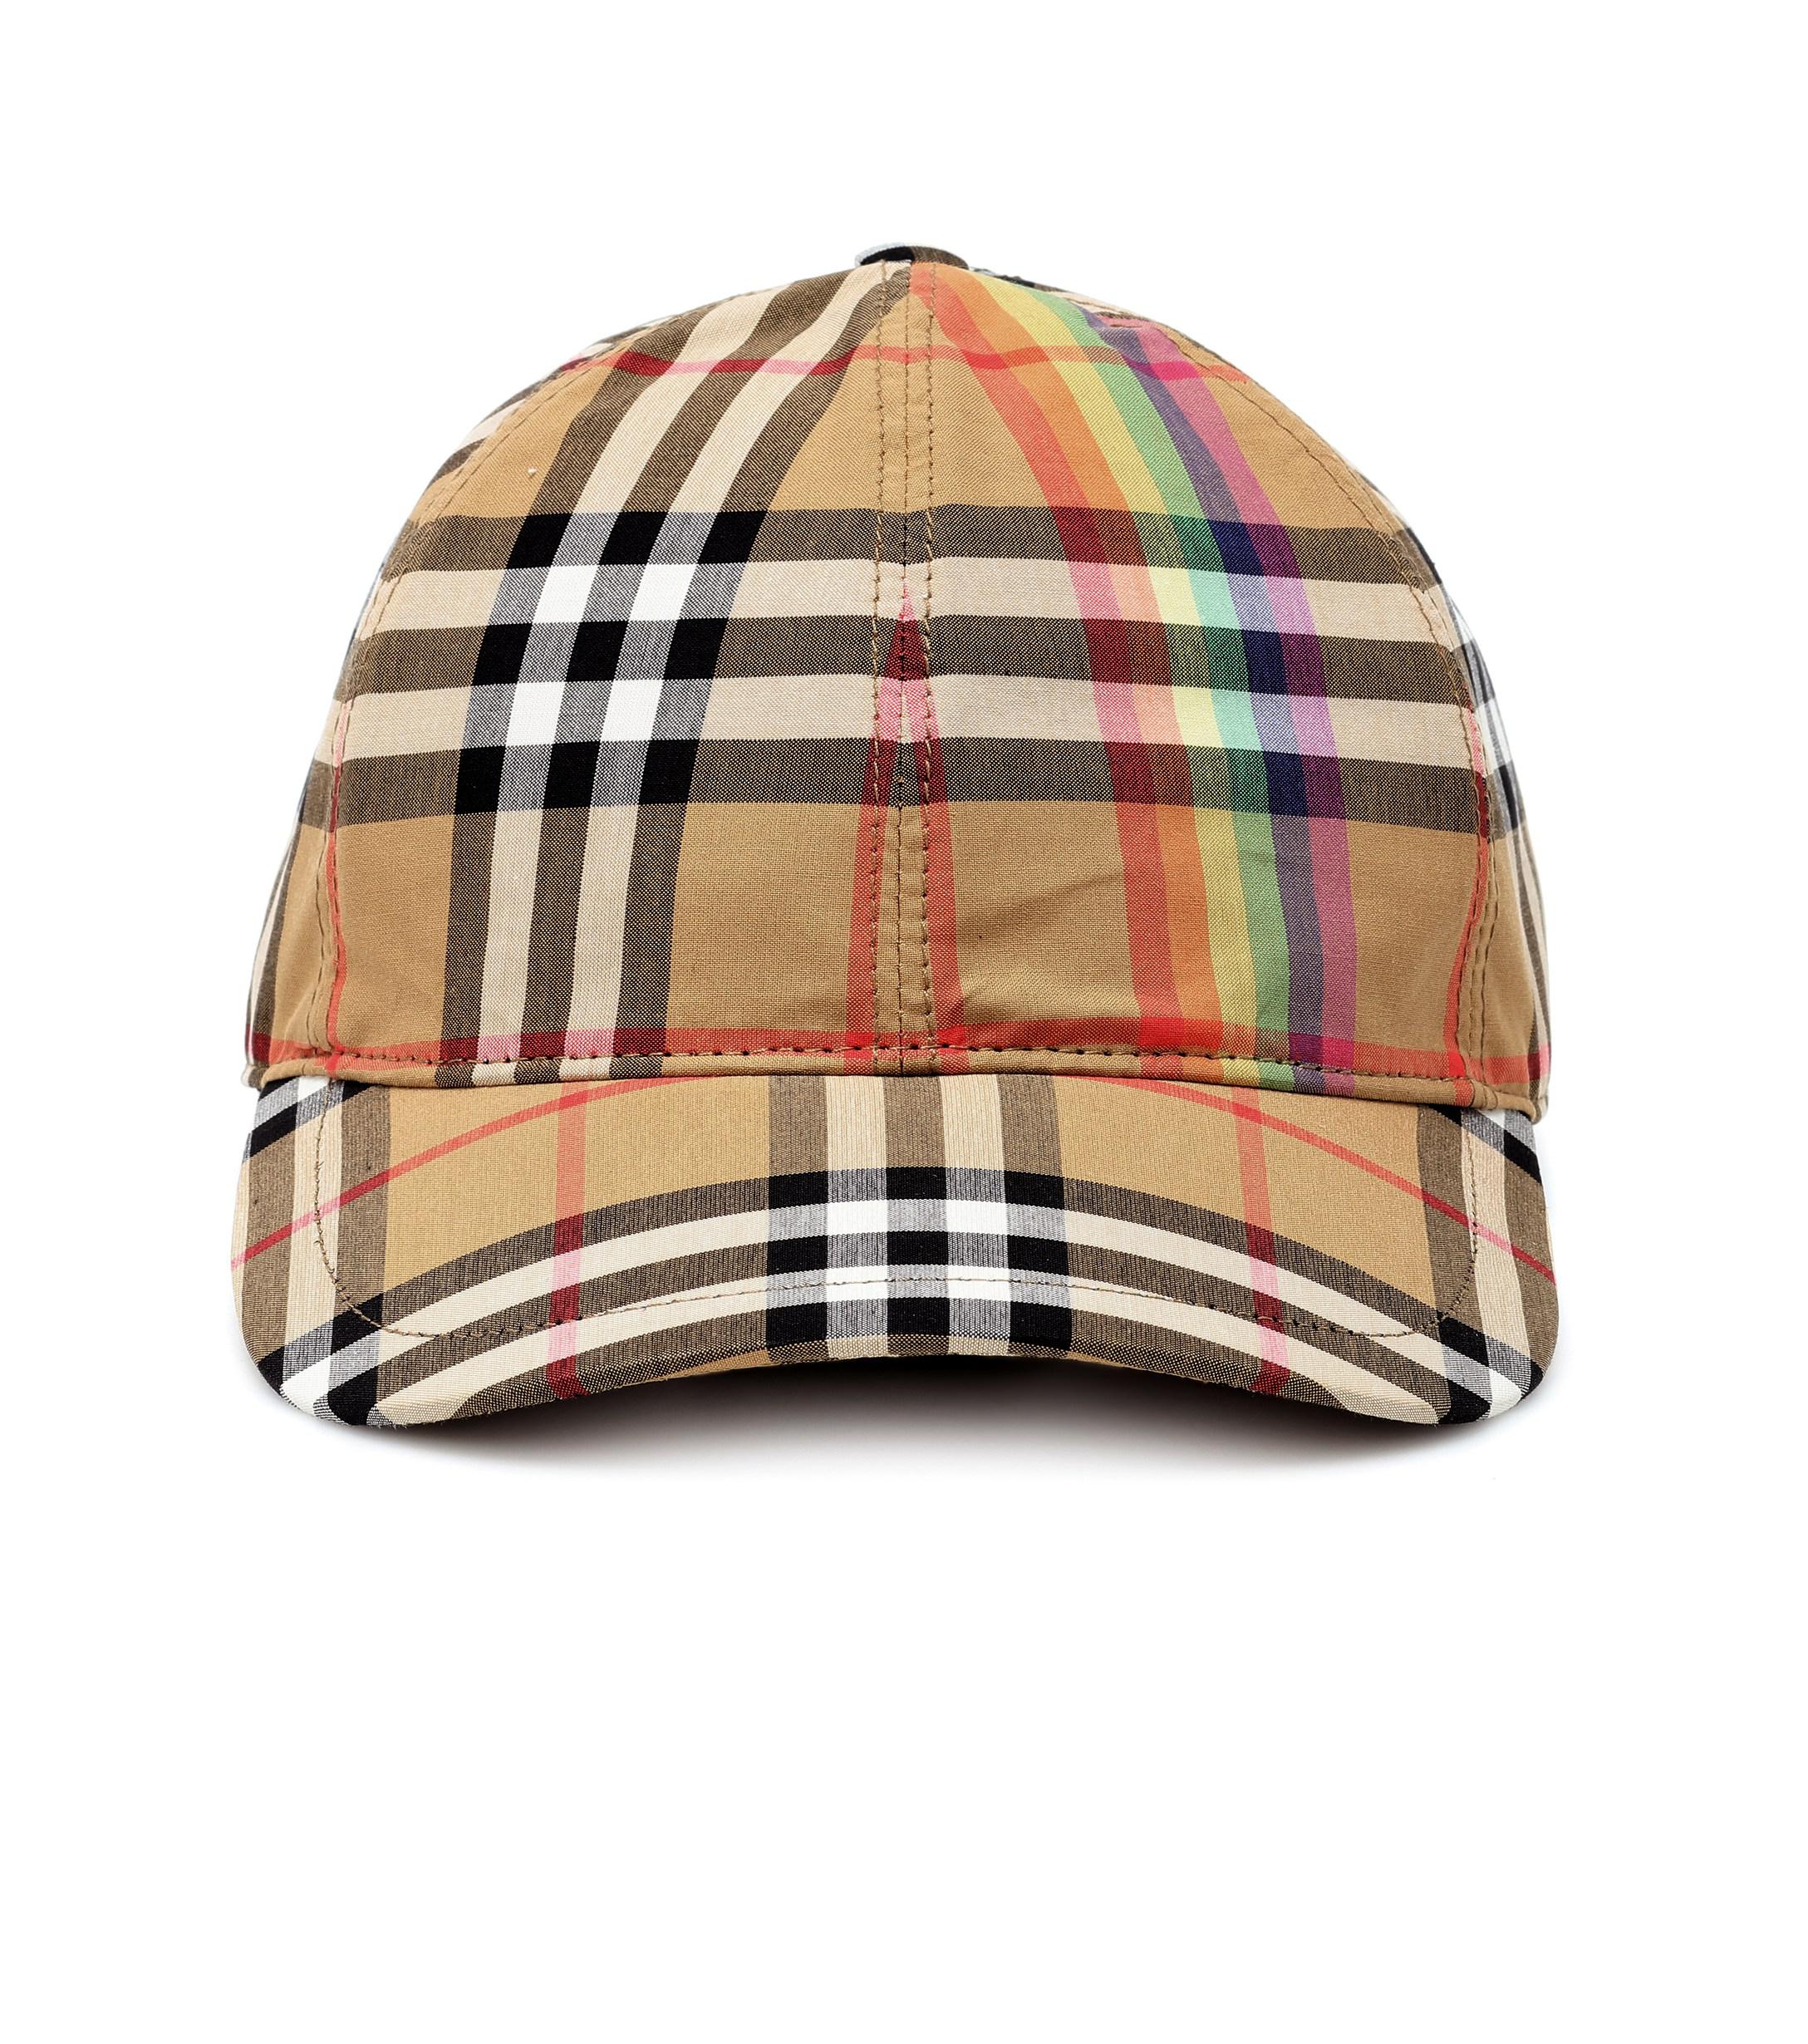 burberry rainbow hat